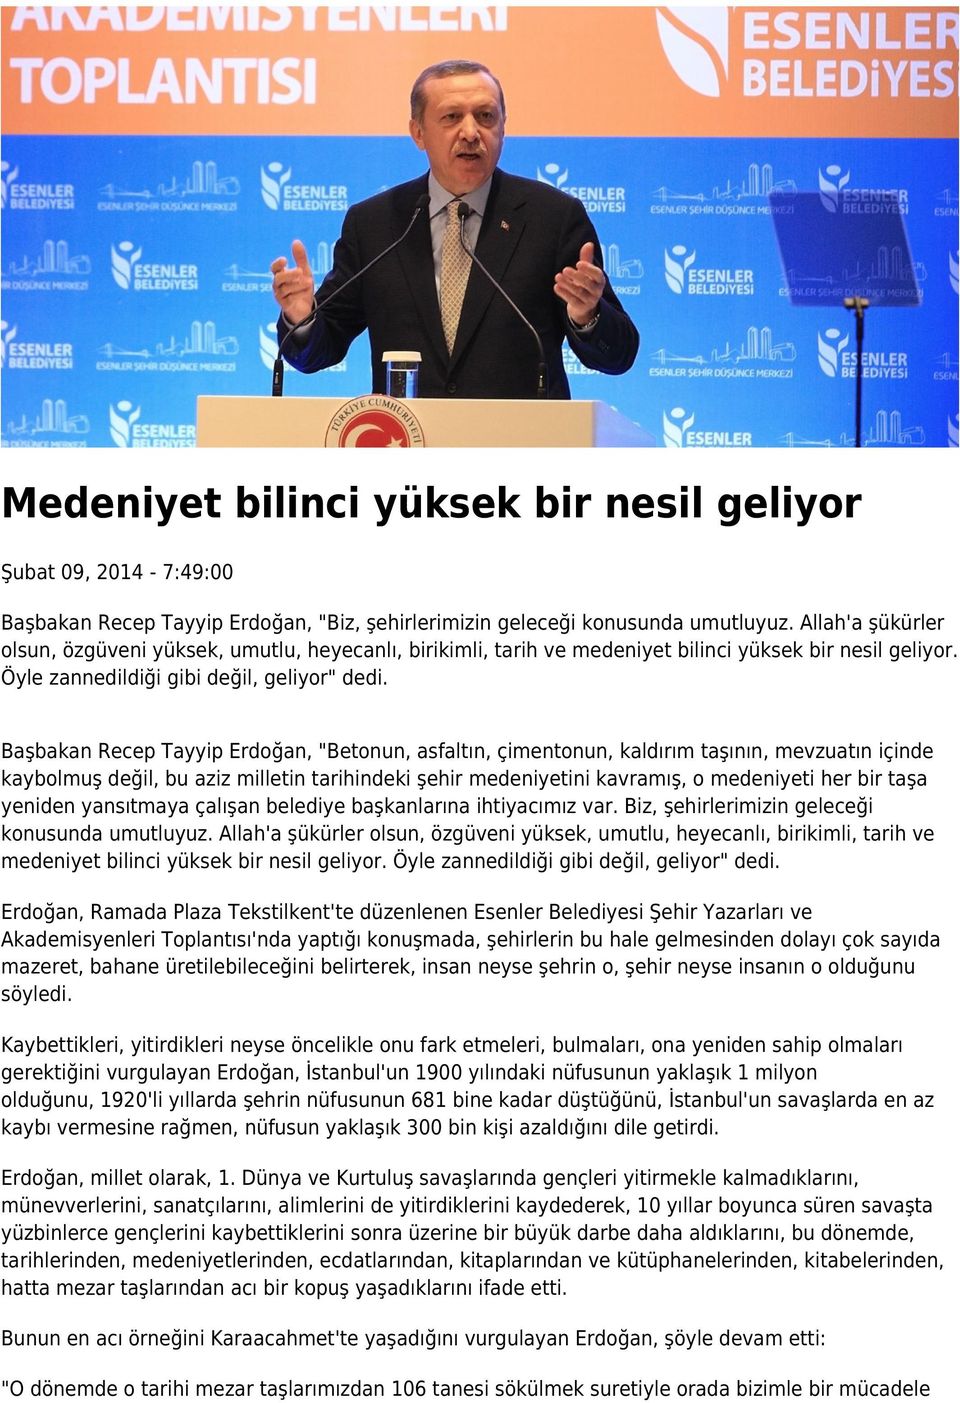 Başbakan Recep Tayyip Erdoğan, "Betonun, asfaltın, çimentonun, kaldırım taşının, mevzuatın içinde kaybolmuş değil, bu aziz milletin tarihindeki şehir medeniyetini kavramış, o medeniyeti her bir taşa